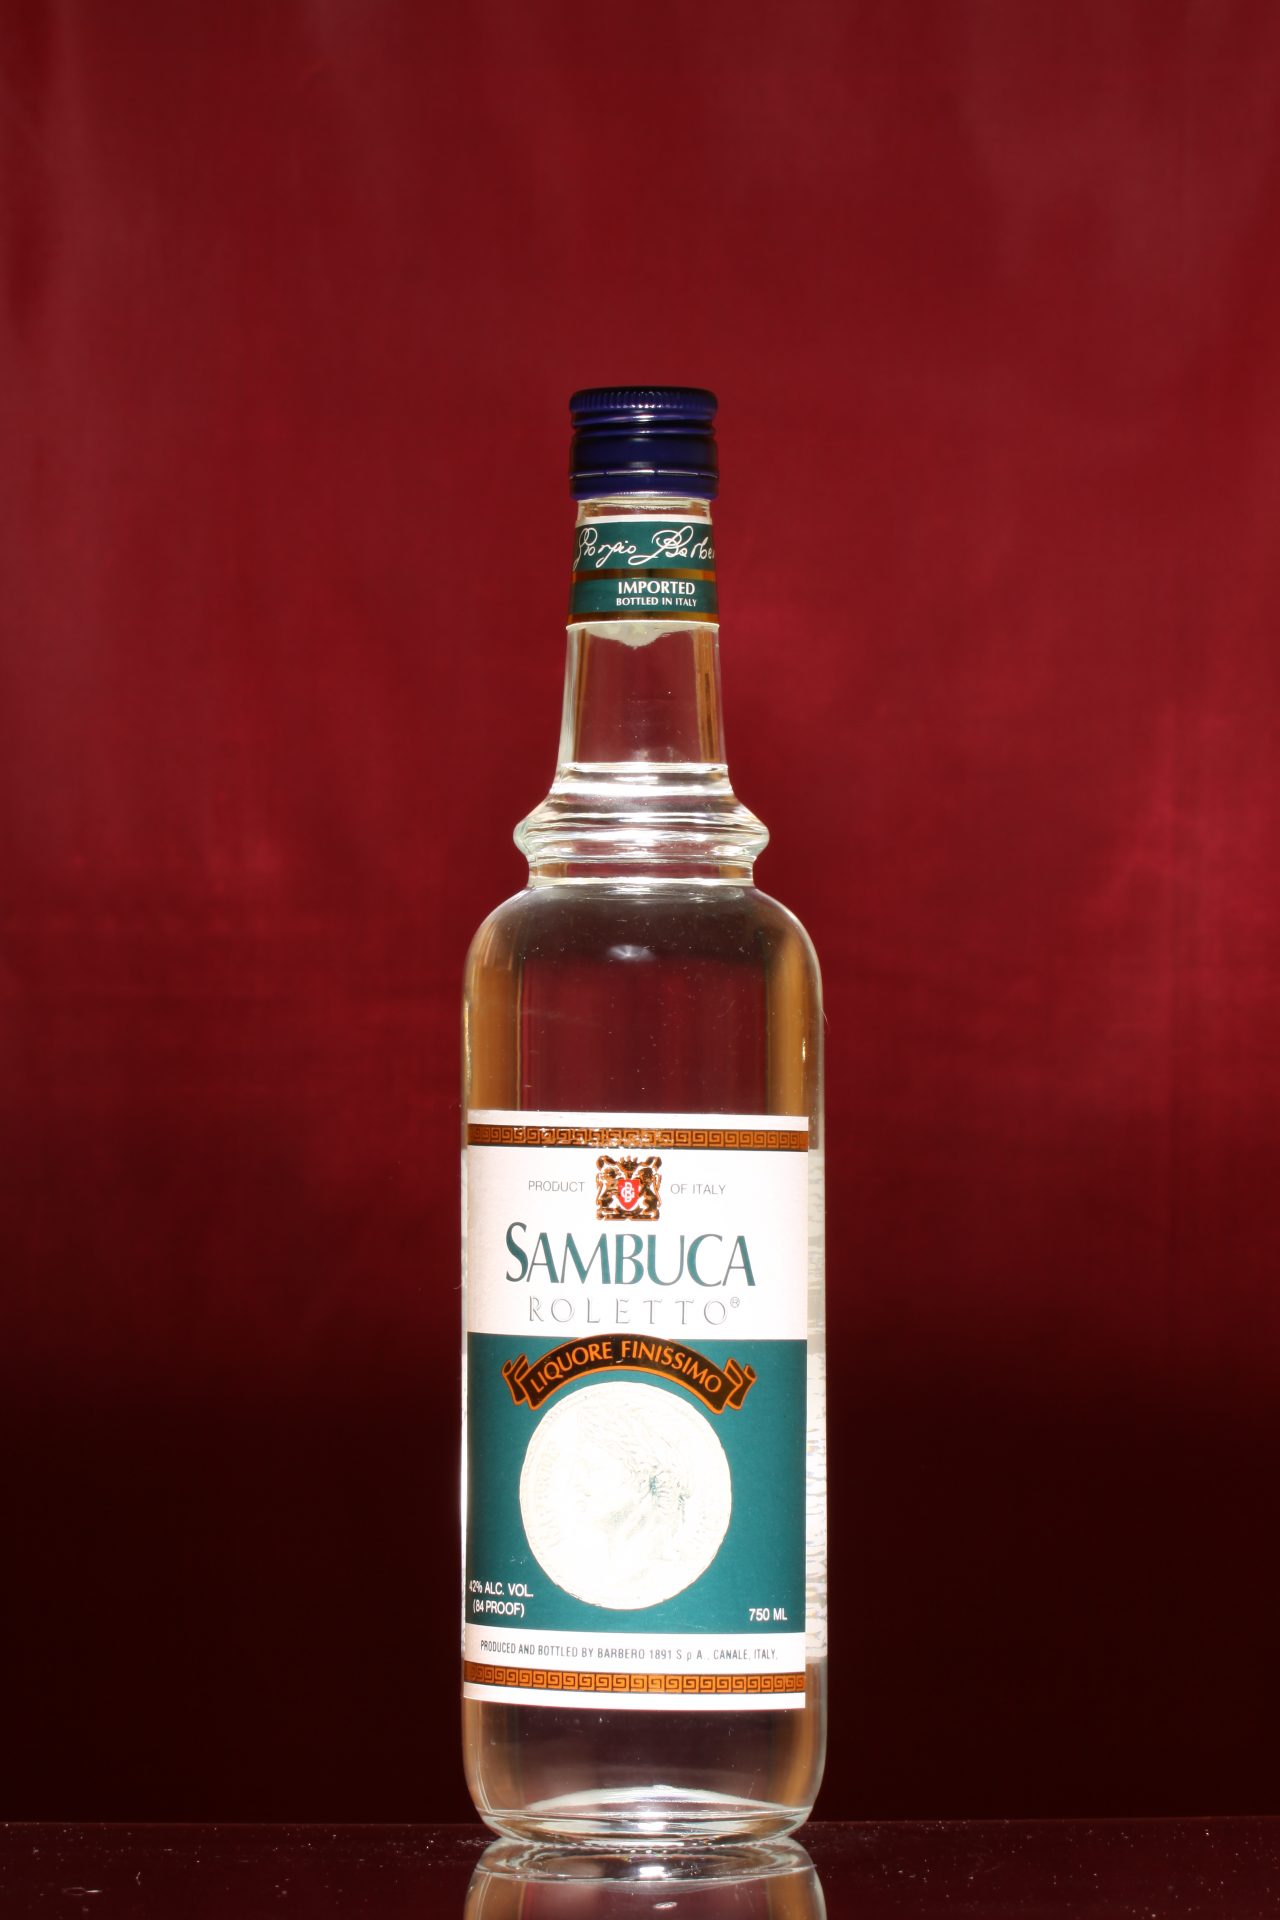 SAMBUCA ROLETTO - The Liquor Collection